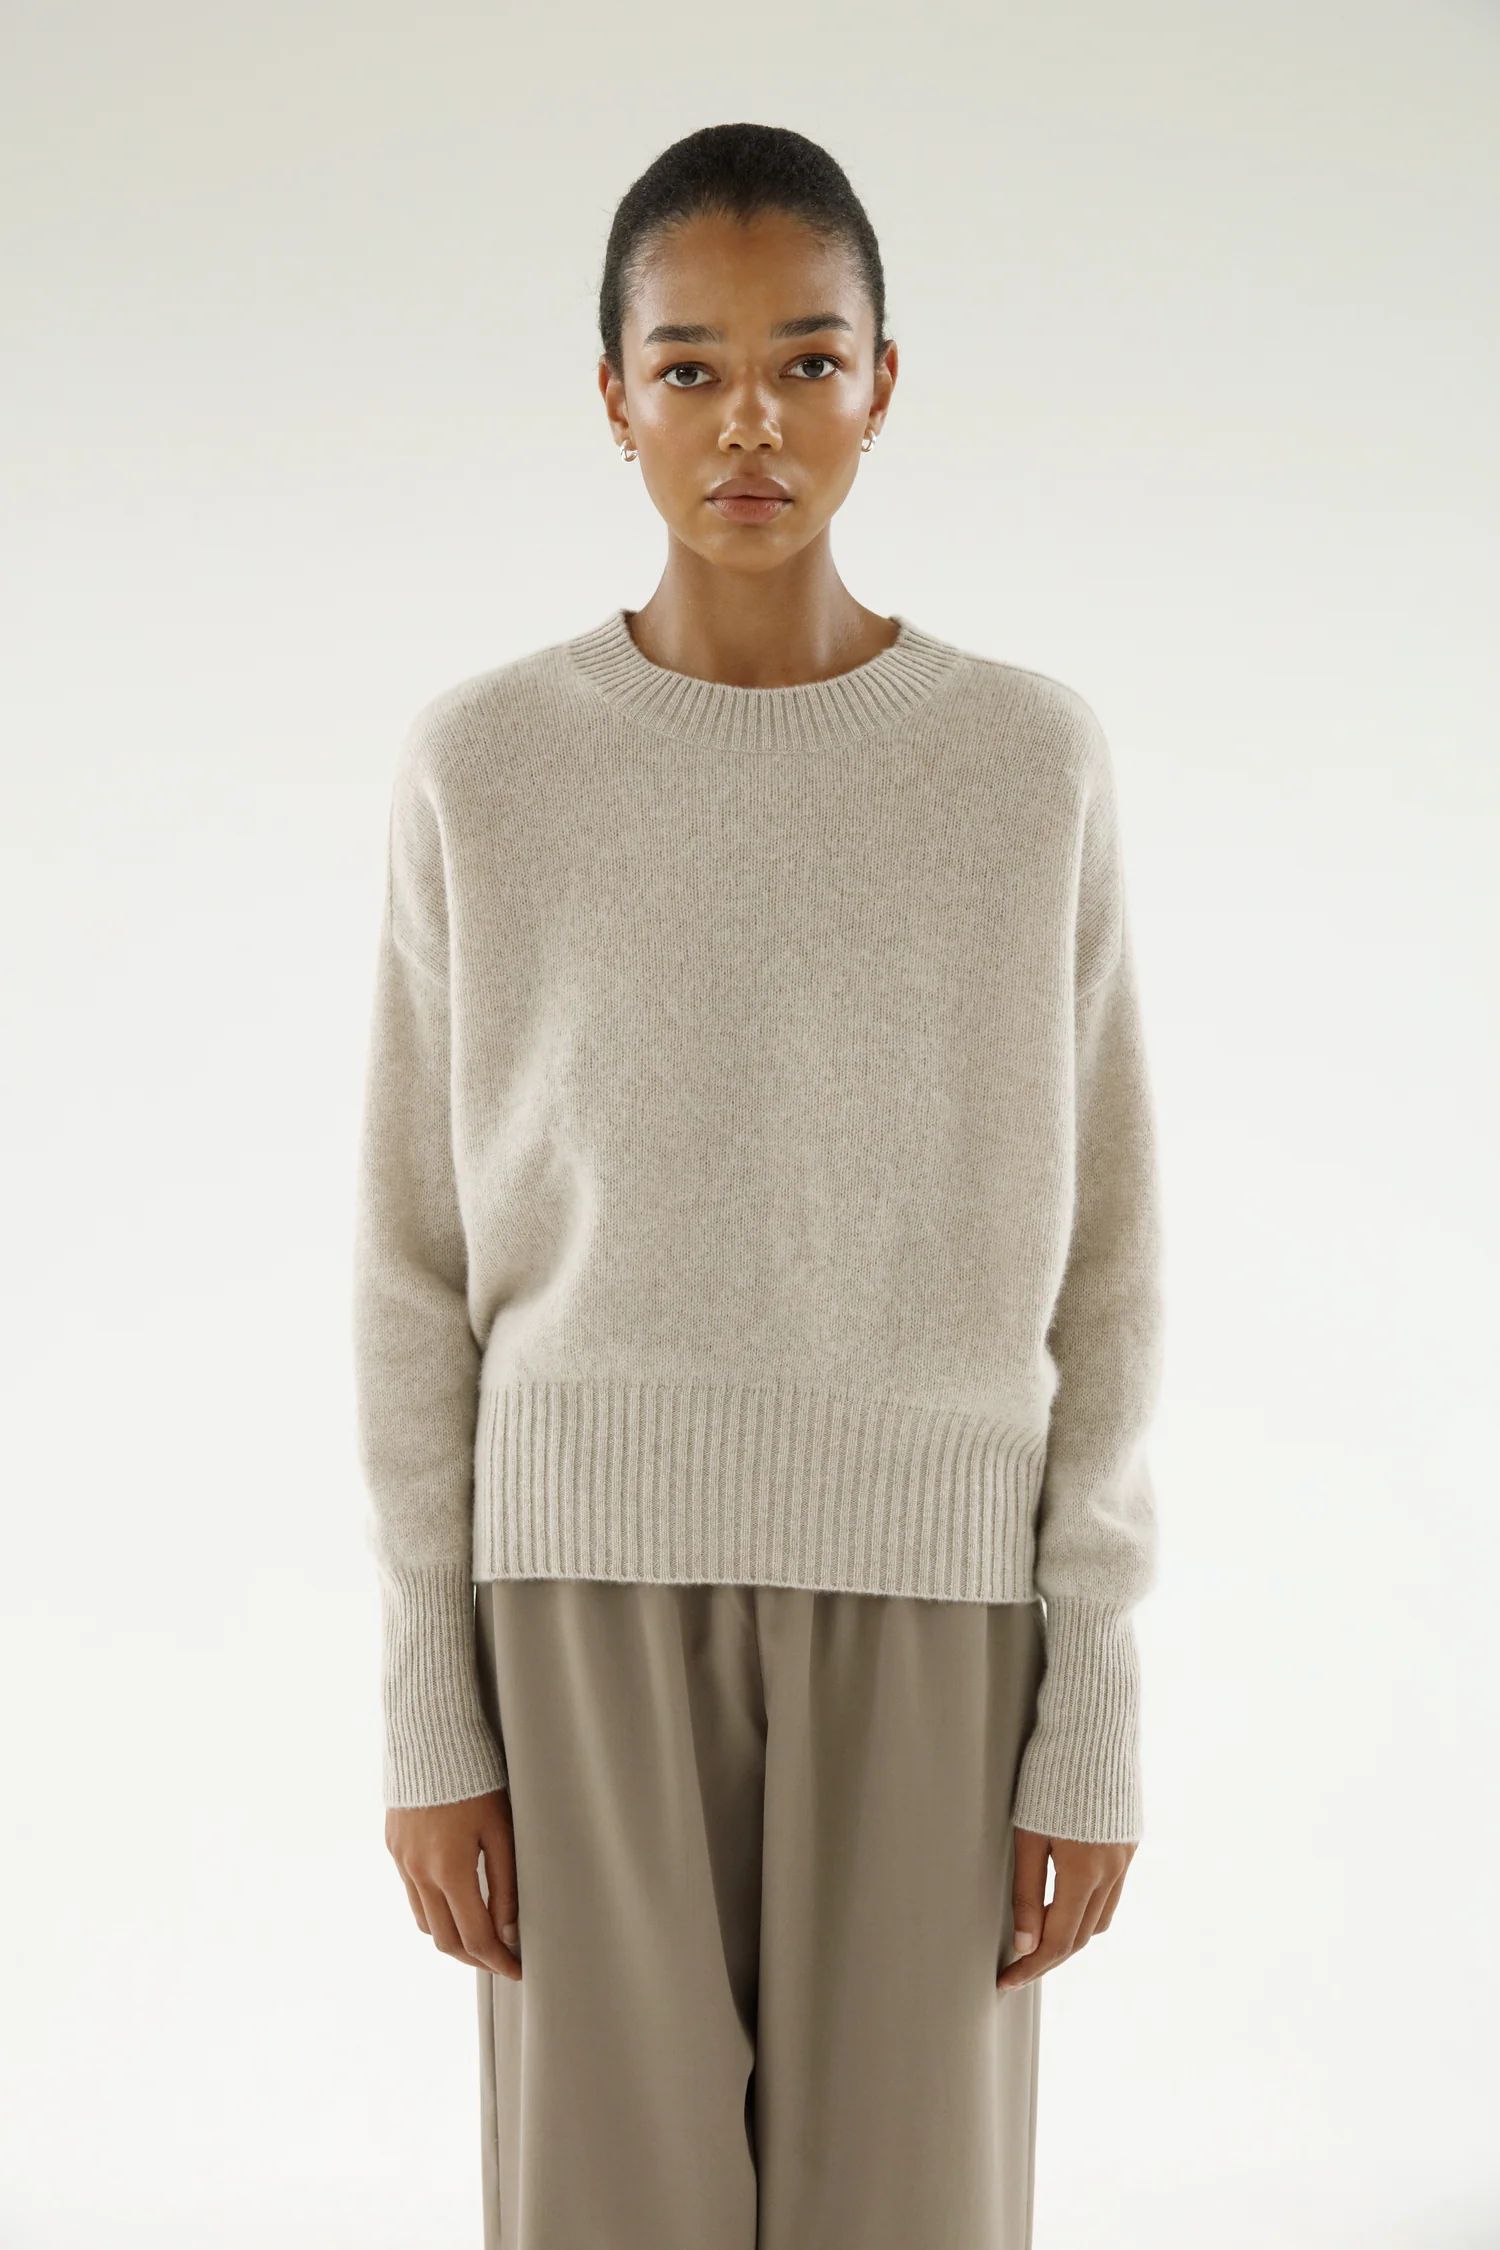 Mica Crewneck Sweater, taupe | Almada Label